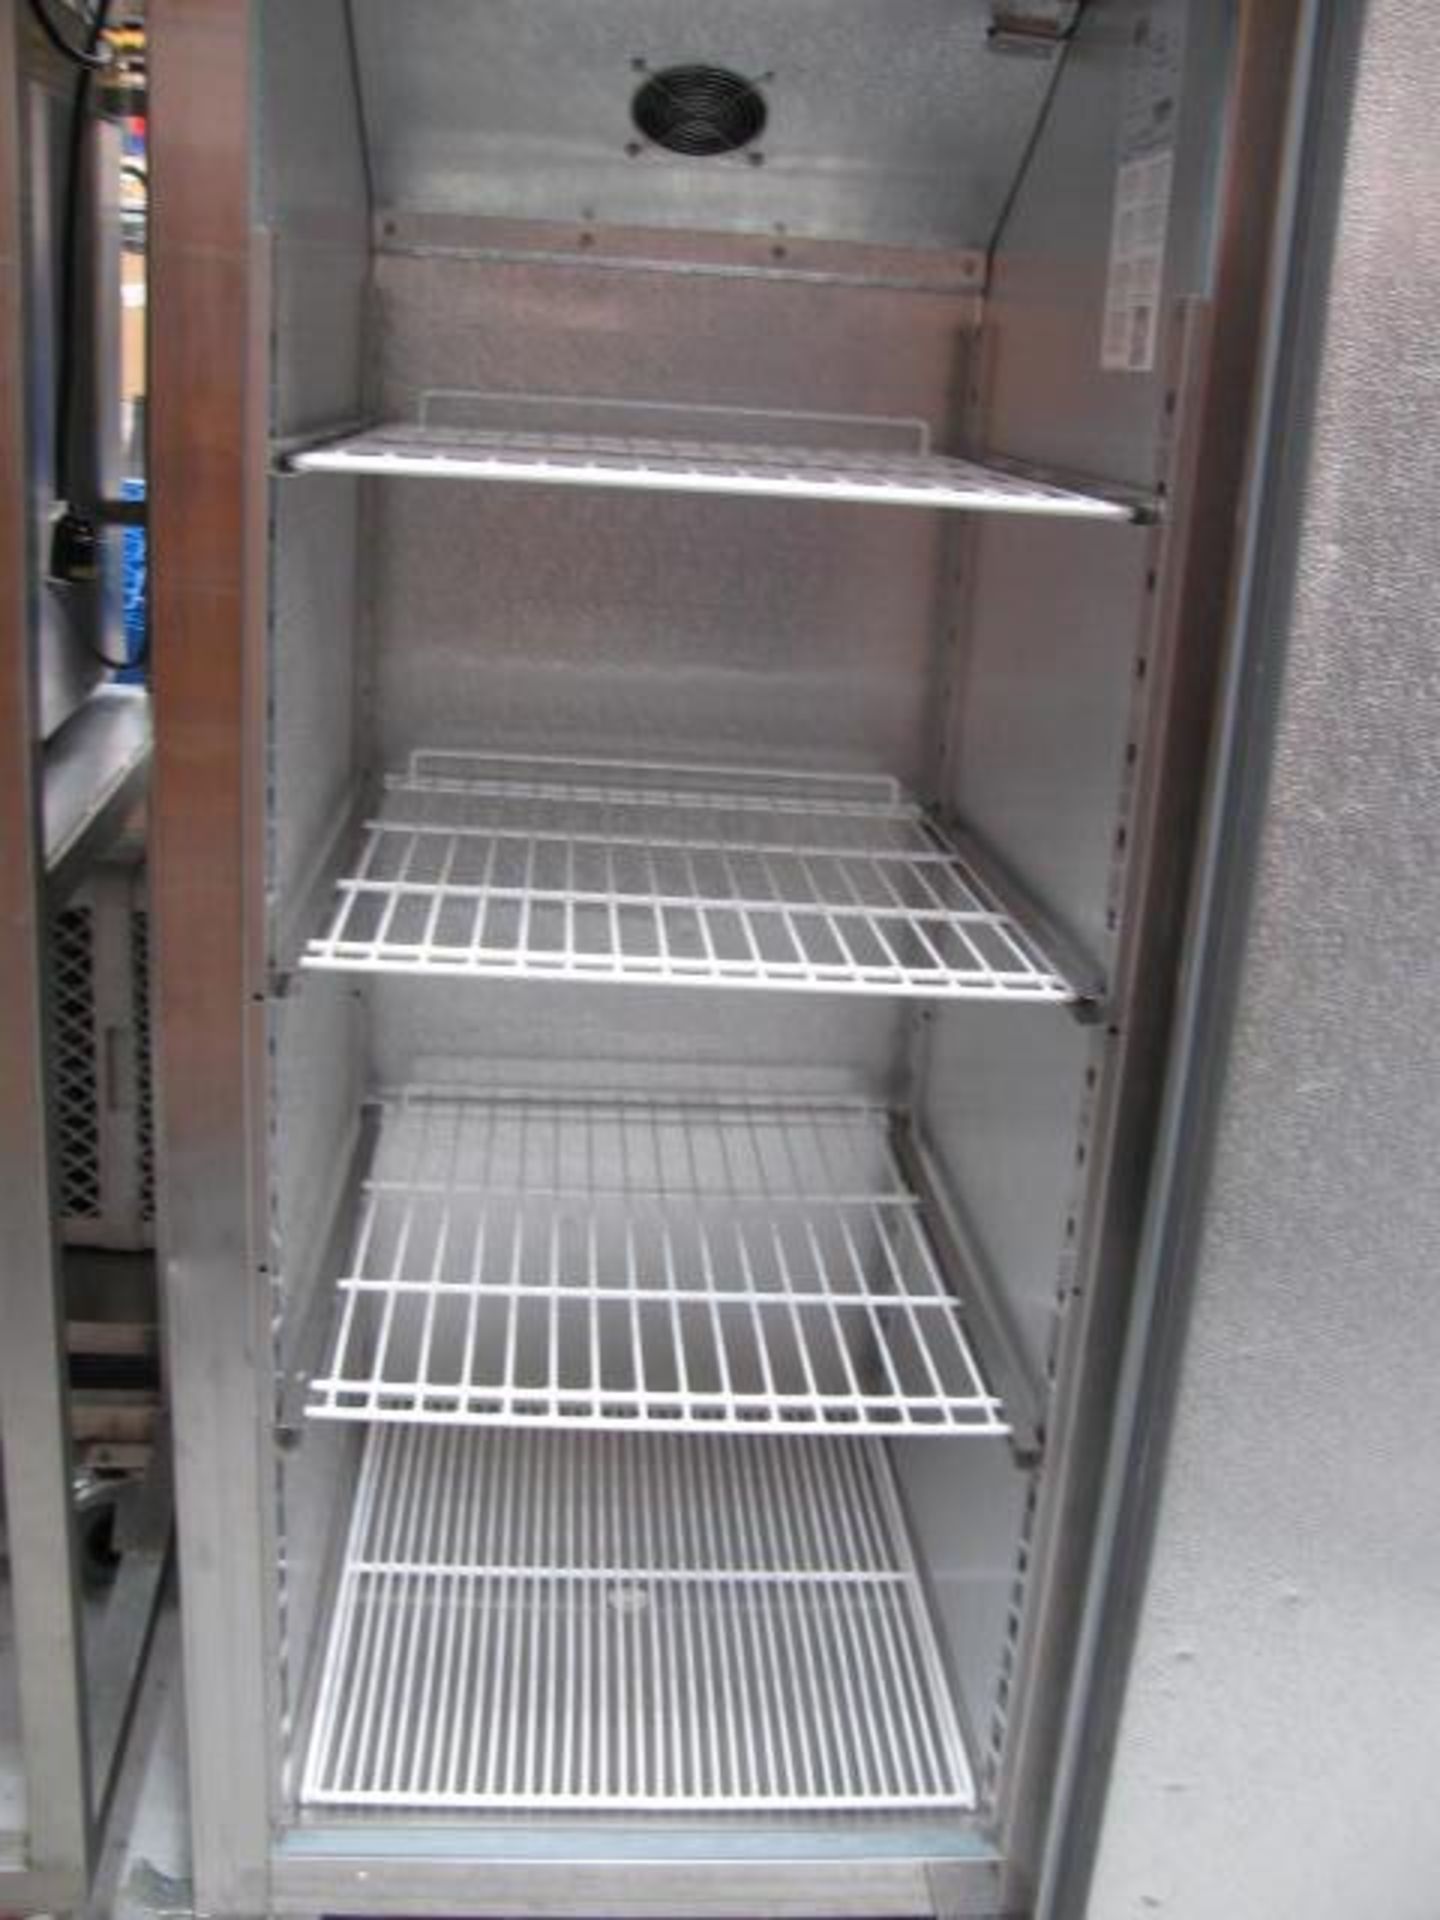 Polar stainless steel upright fridge Model G592 - Image 2 of 2